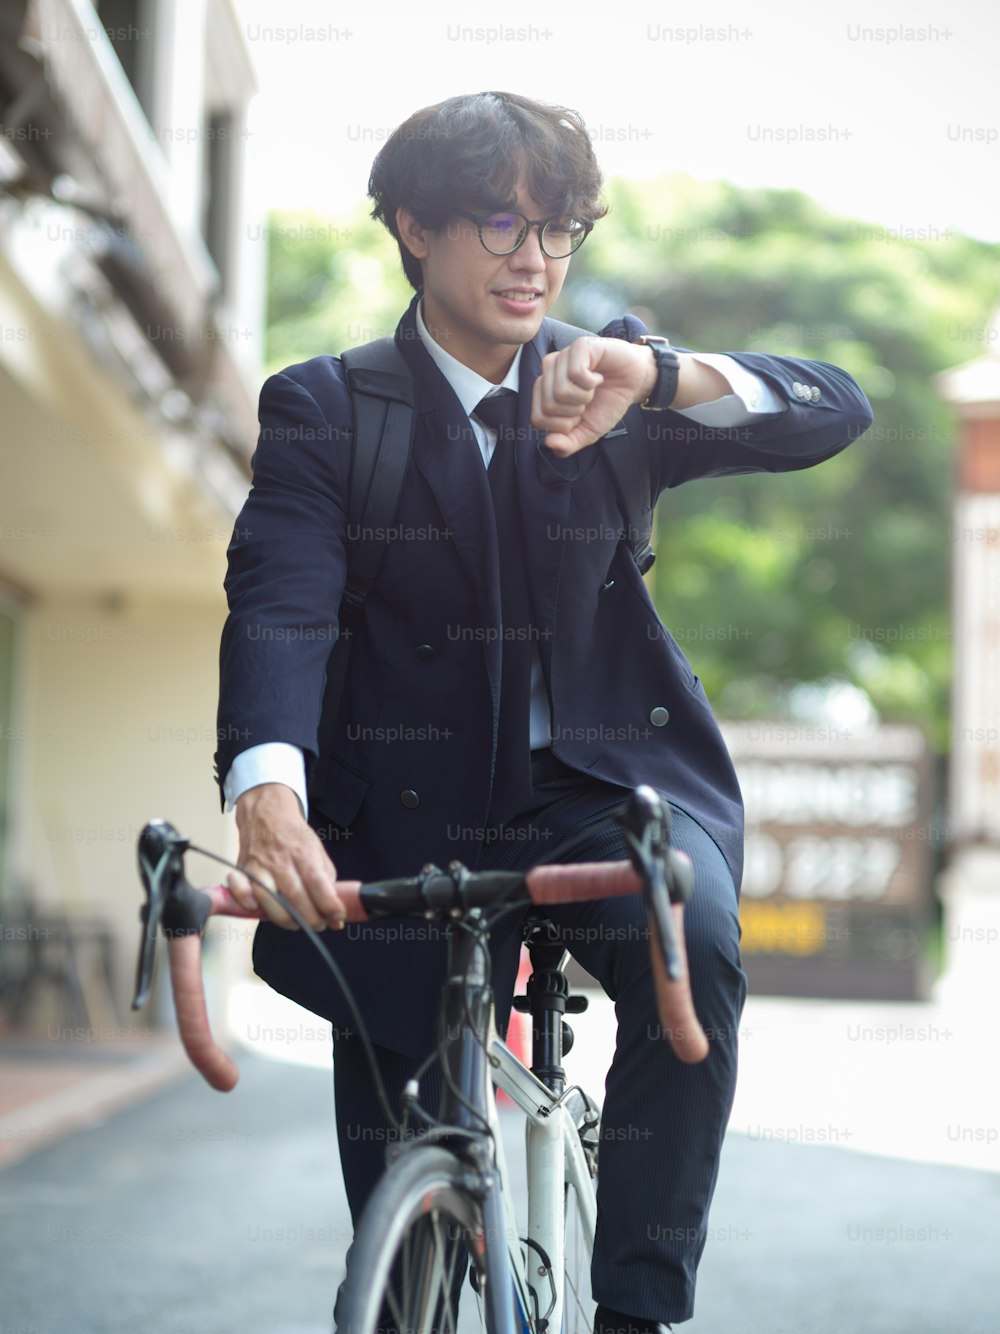 아침에 러시아워에 출퇴근하기 위해 자전거를 타고 있는 젊은 도시 사업가. 성공적인 사업가는 자전거로 일하러갑니다.